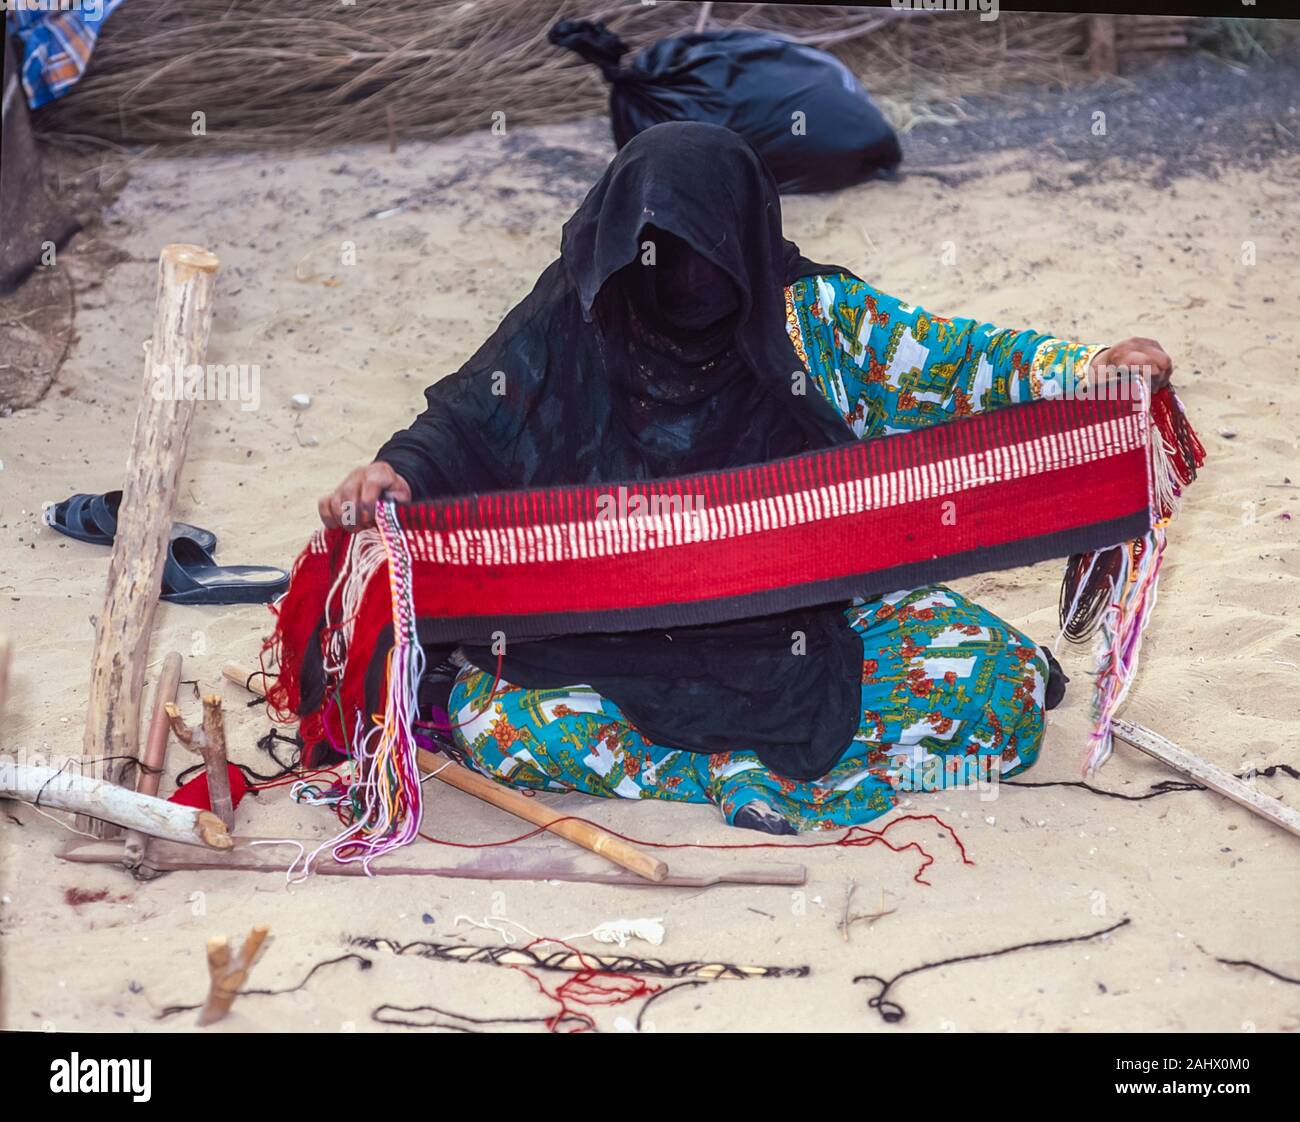 Le folklore et l'histoire arabes de Dubaï avec un Emirati femme démontrant des compétences de tissage à l'Shindagha Heritage Village situé à l'embouchure de la Crique de Dubaï Dubaï pendant le Festival et foire commerciale aux Emirats Arabes Unis Banque D'Images